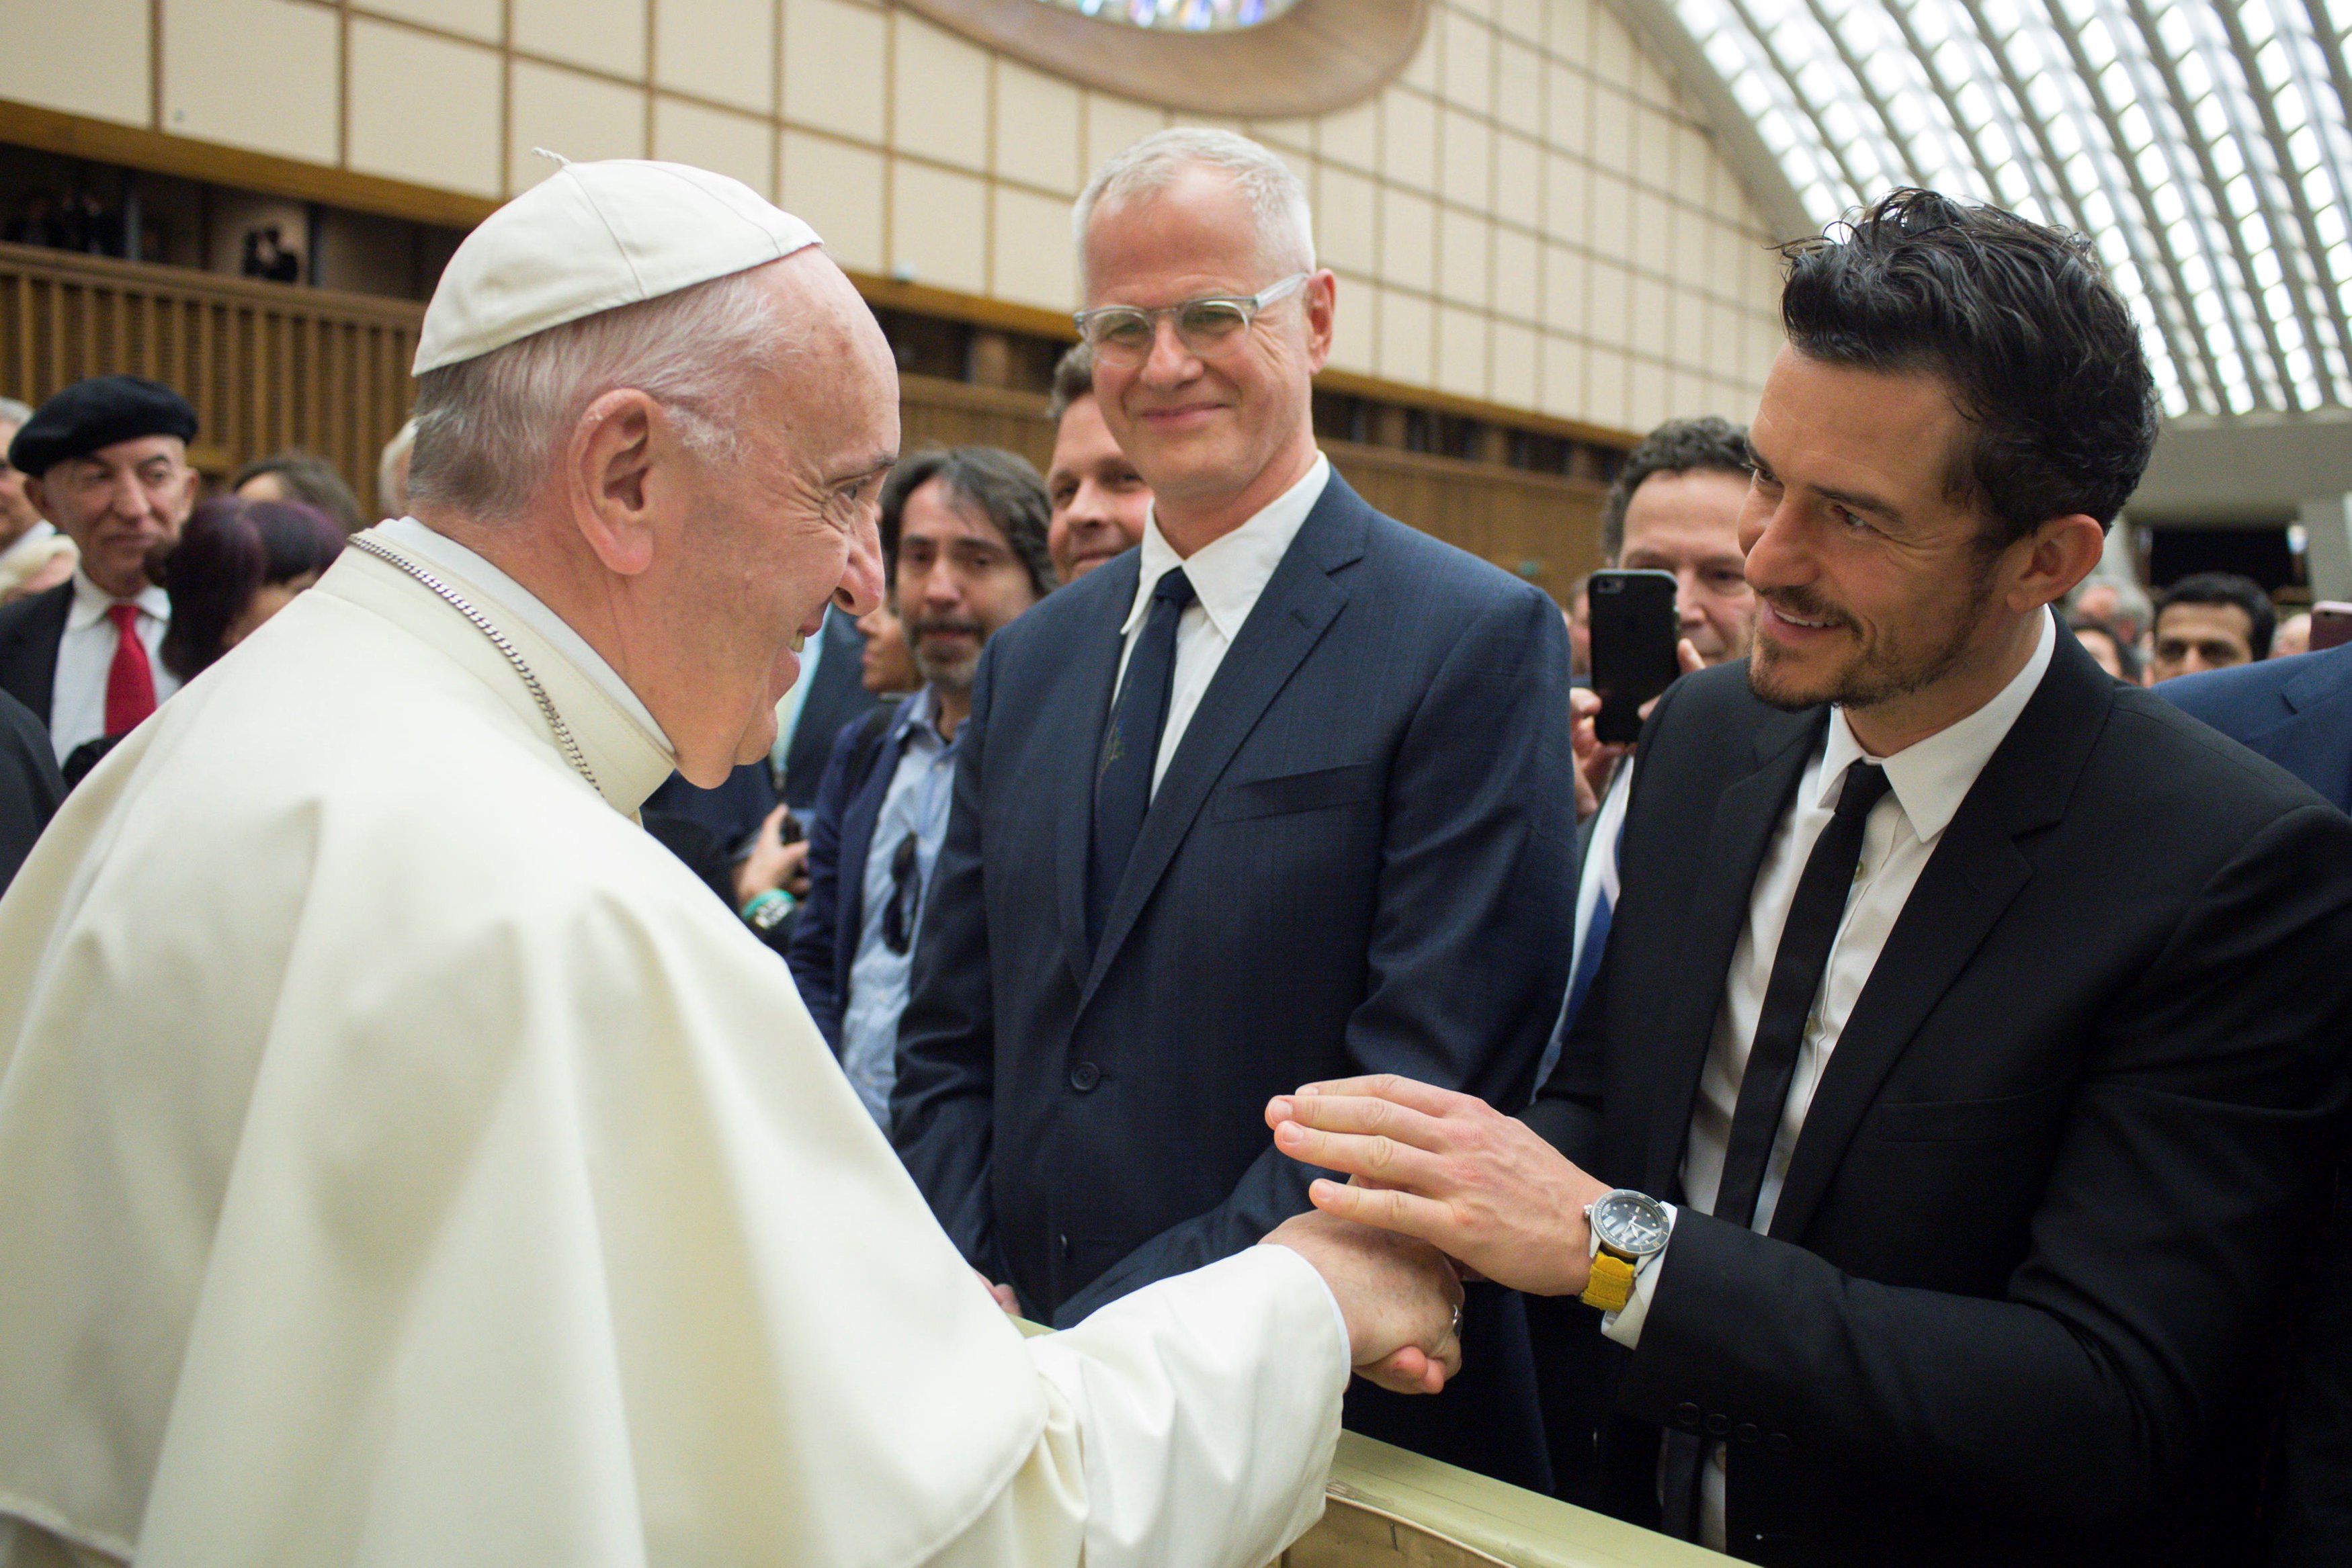 El Papa Francisco se encuentra con el actor Orlando Bloom durante la conferencia internacional "United to Cure" sobre la cura del cáncer en la sala Paul VI, en el Vaticano, el 28 de abril de 2018. Osservatore Romano / Folleto a través de REUTERS ATENCIÓN EDITORES - ESTA IMAGEN FUE PROPORCIONADA POR A TERCERO